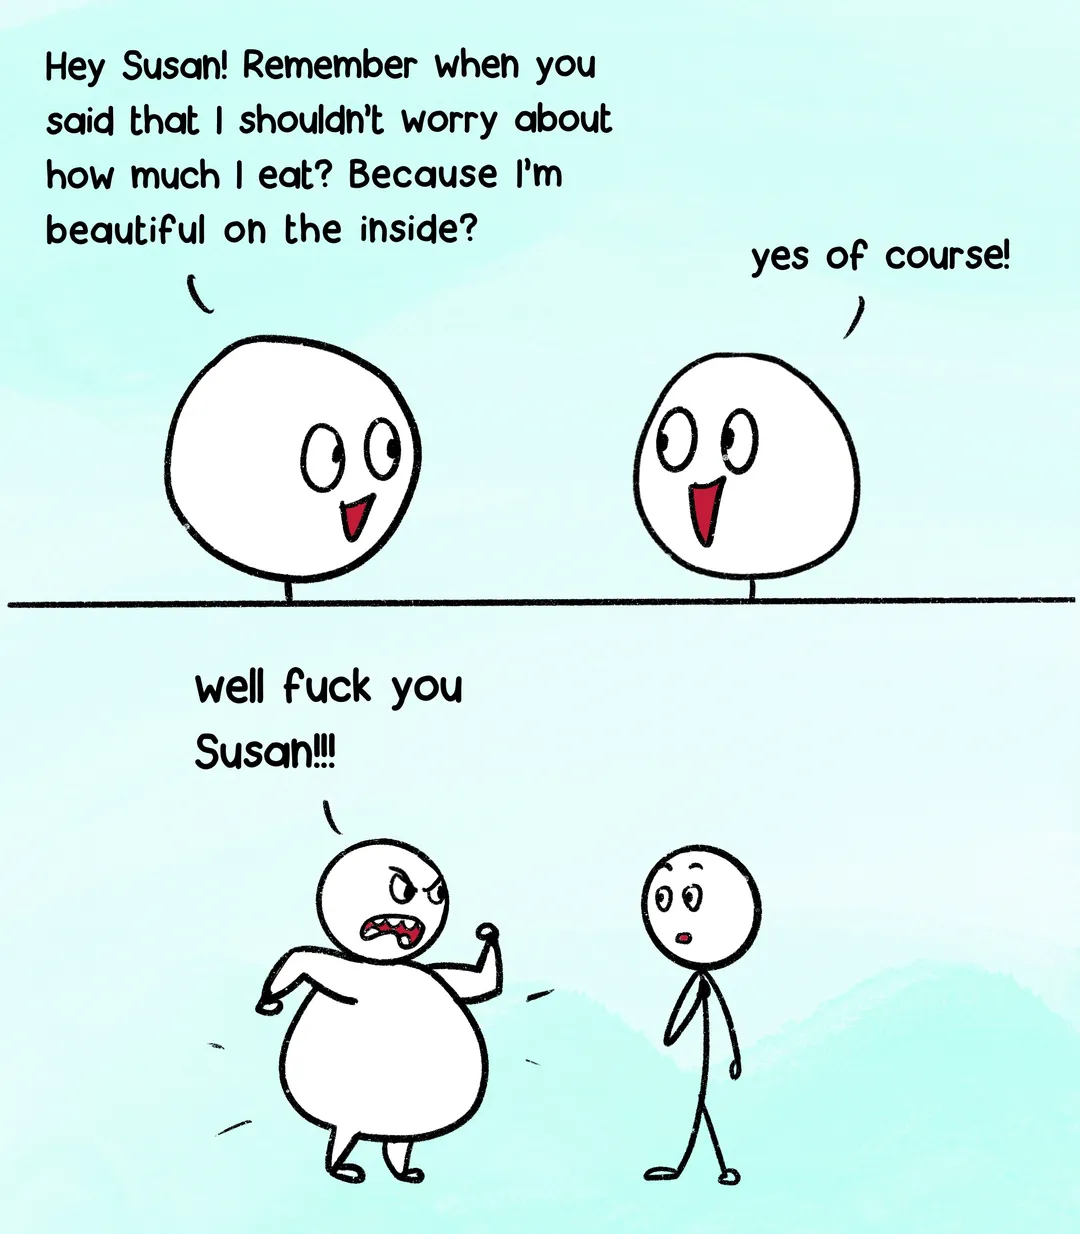 Susan needs to shut up!